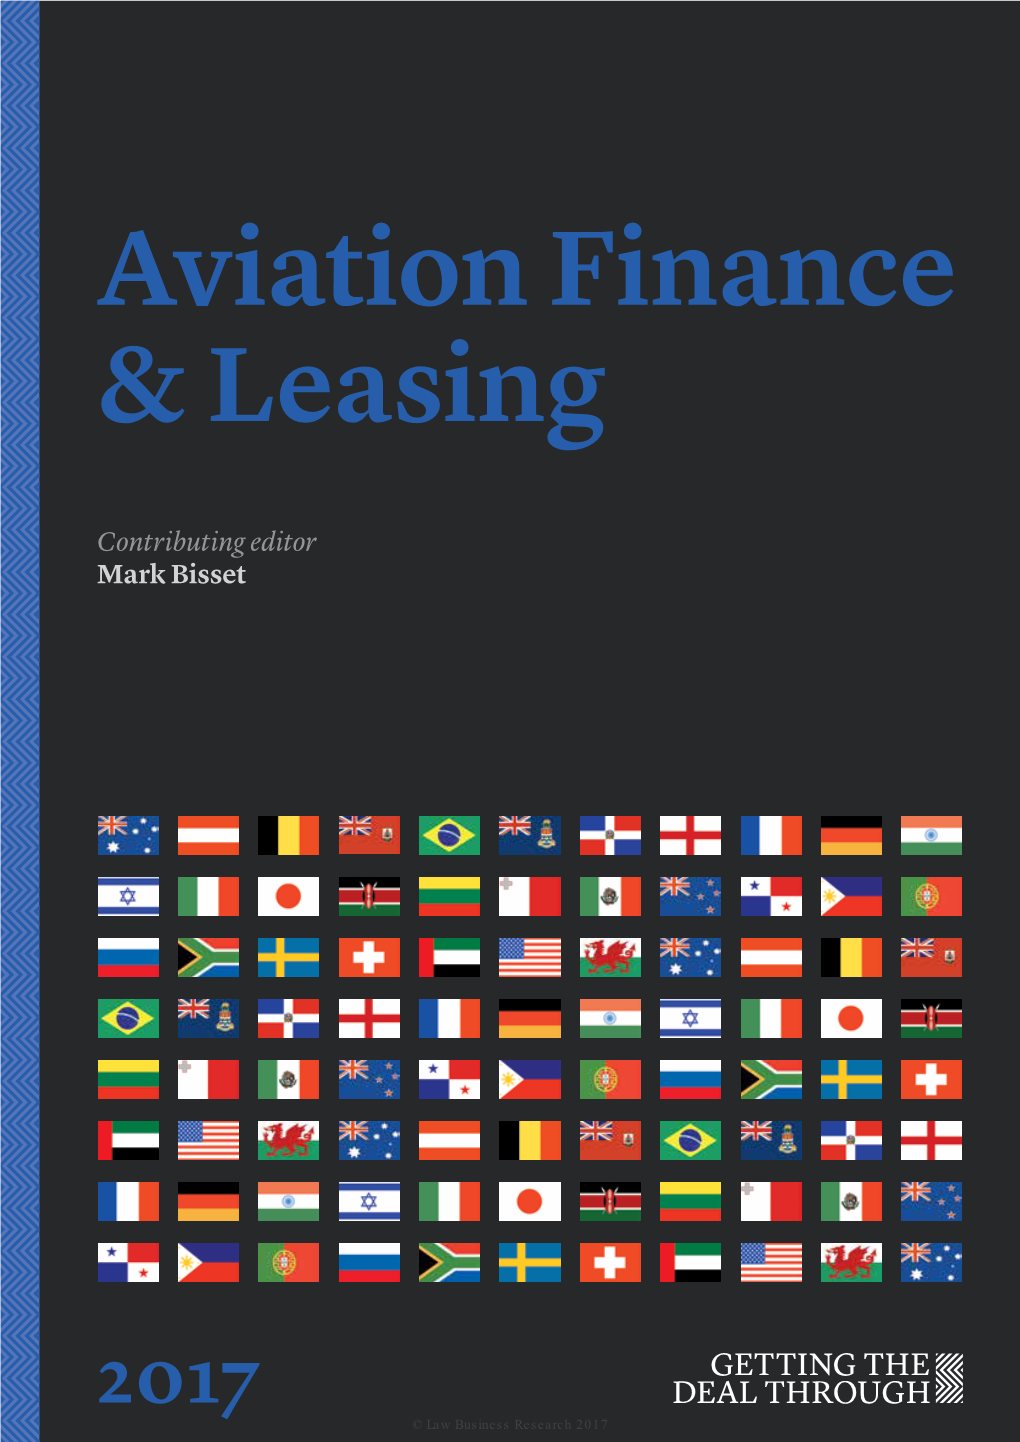 Aviation Finance & Leasing